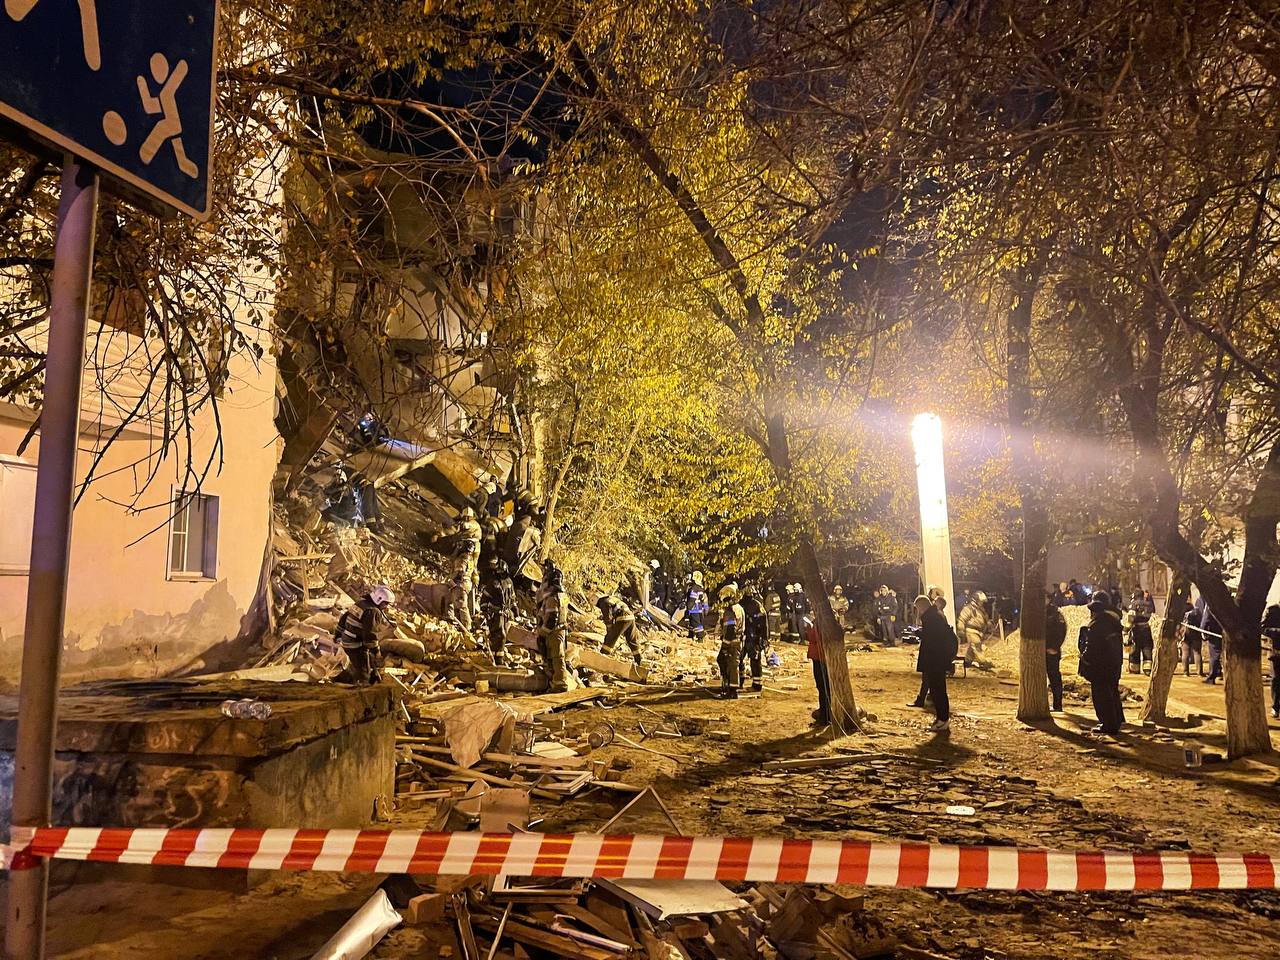 (ФОТО, ВИДЕО) В Астрахани обрушились два подъезда пятиэтажного дома. Один человек погиб, еще несколько числятся пропавшими без вести